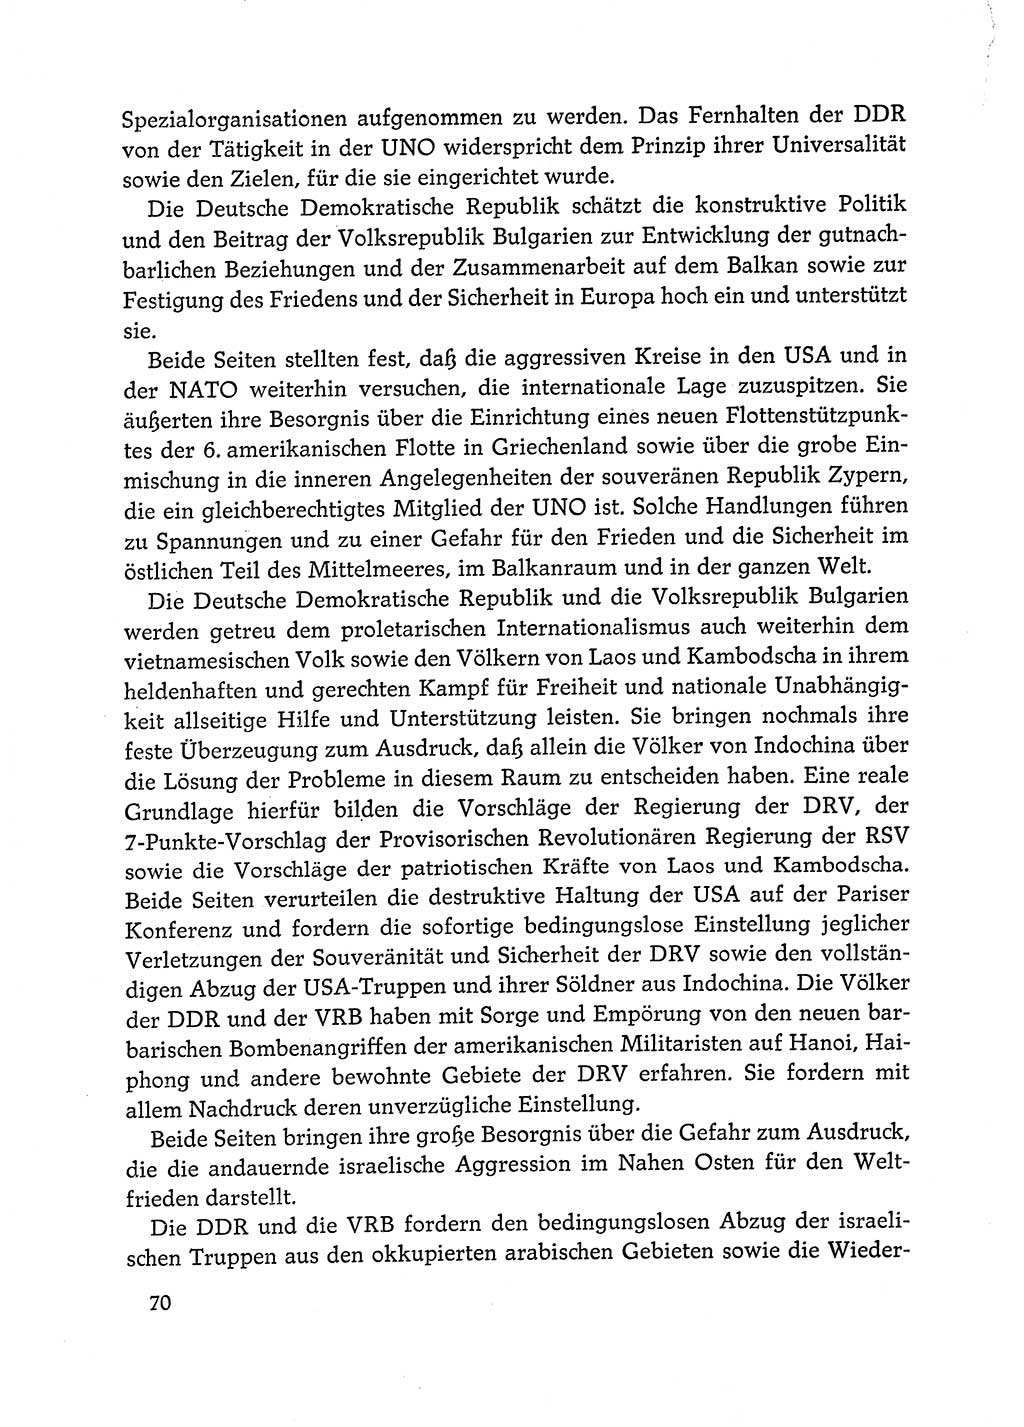 Dokumente der Sozialistischen Einheitspartei Deutschlands (SED) [Deutsche Demokratische Republik (DDR)] 1972-1973, Seite 70 (Dok. SED DDR 1972-1973, S. 70)